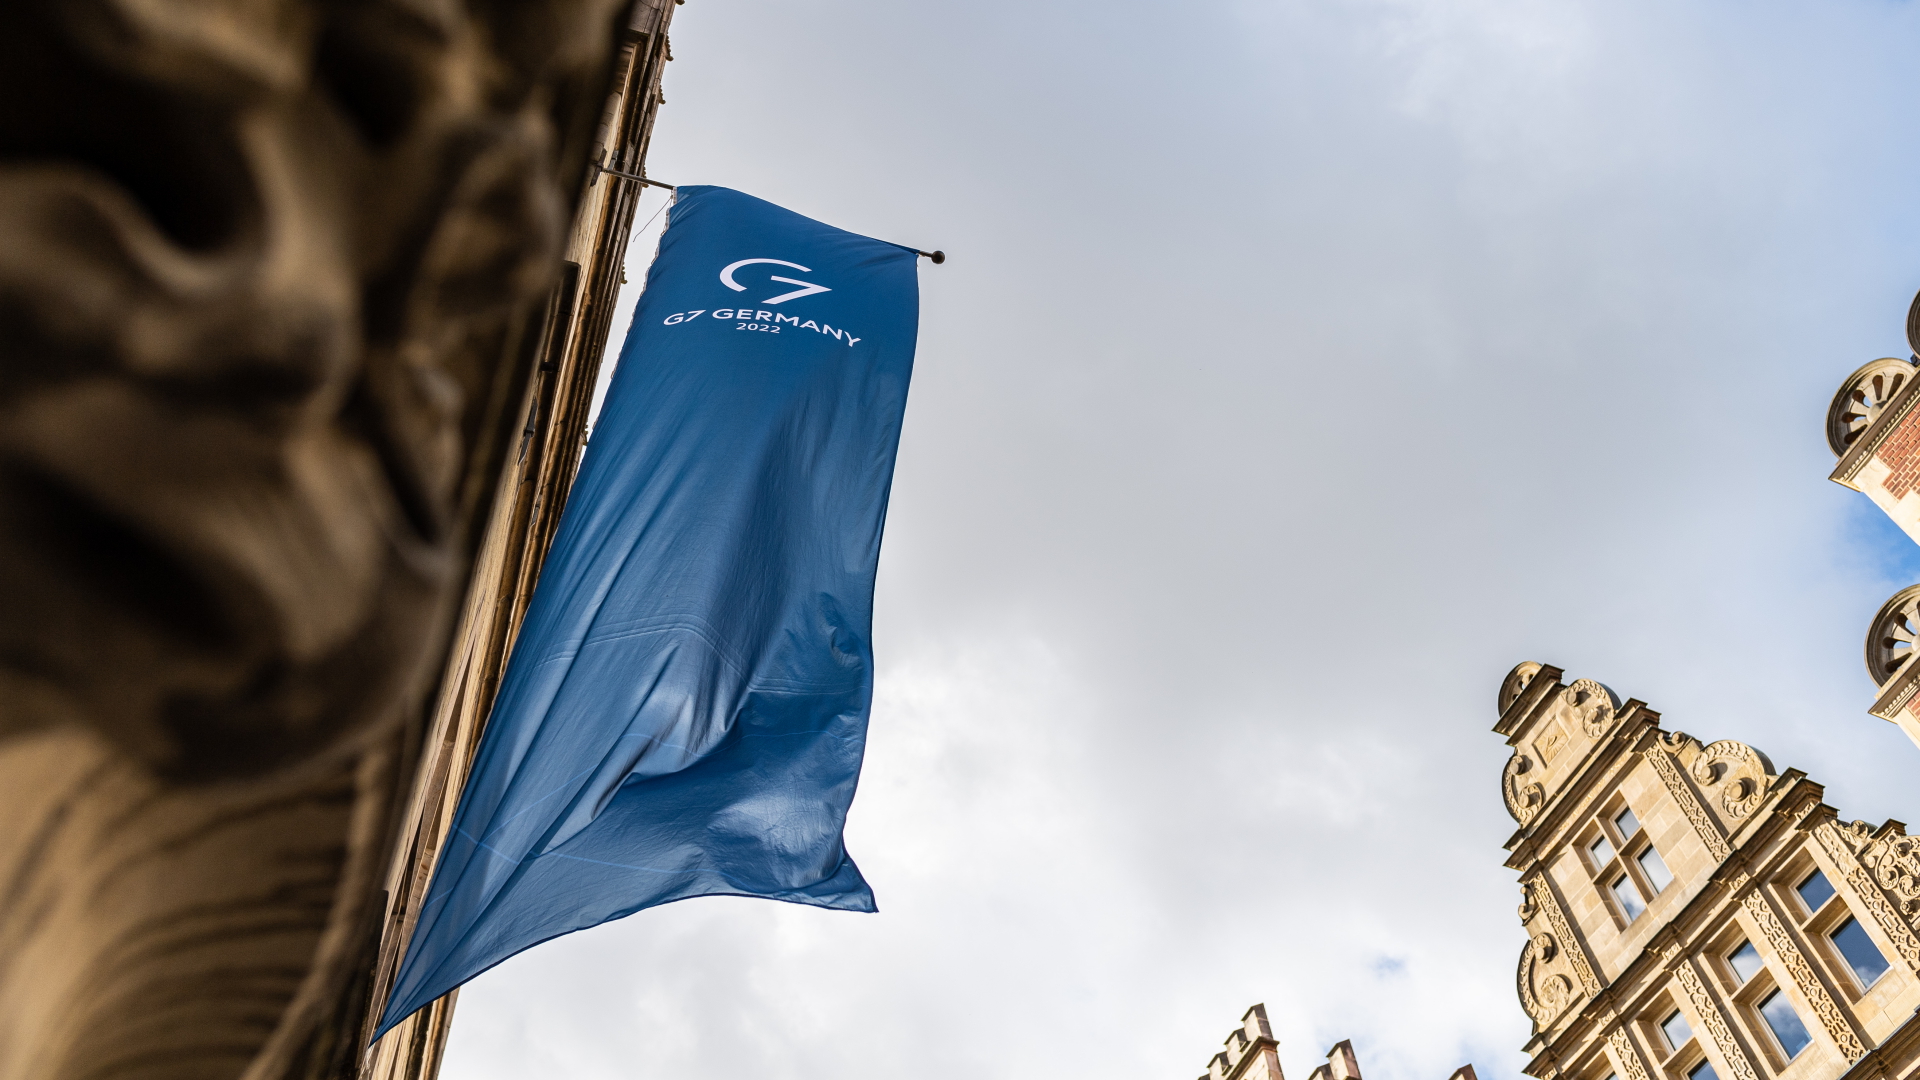 An der Fassade des Historischen Rathauses in Münster, wo sich die Teilnehmer der G7 treffen, weht eine G7 Fahne.  | dpa